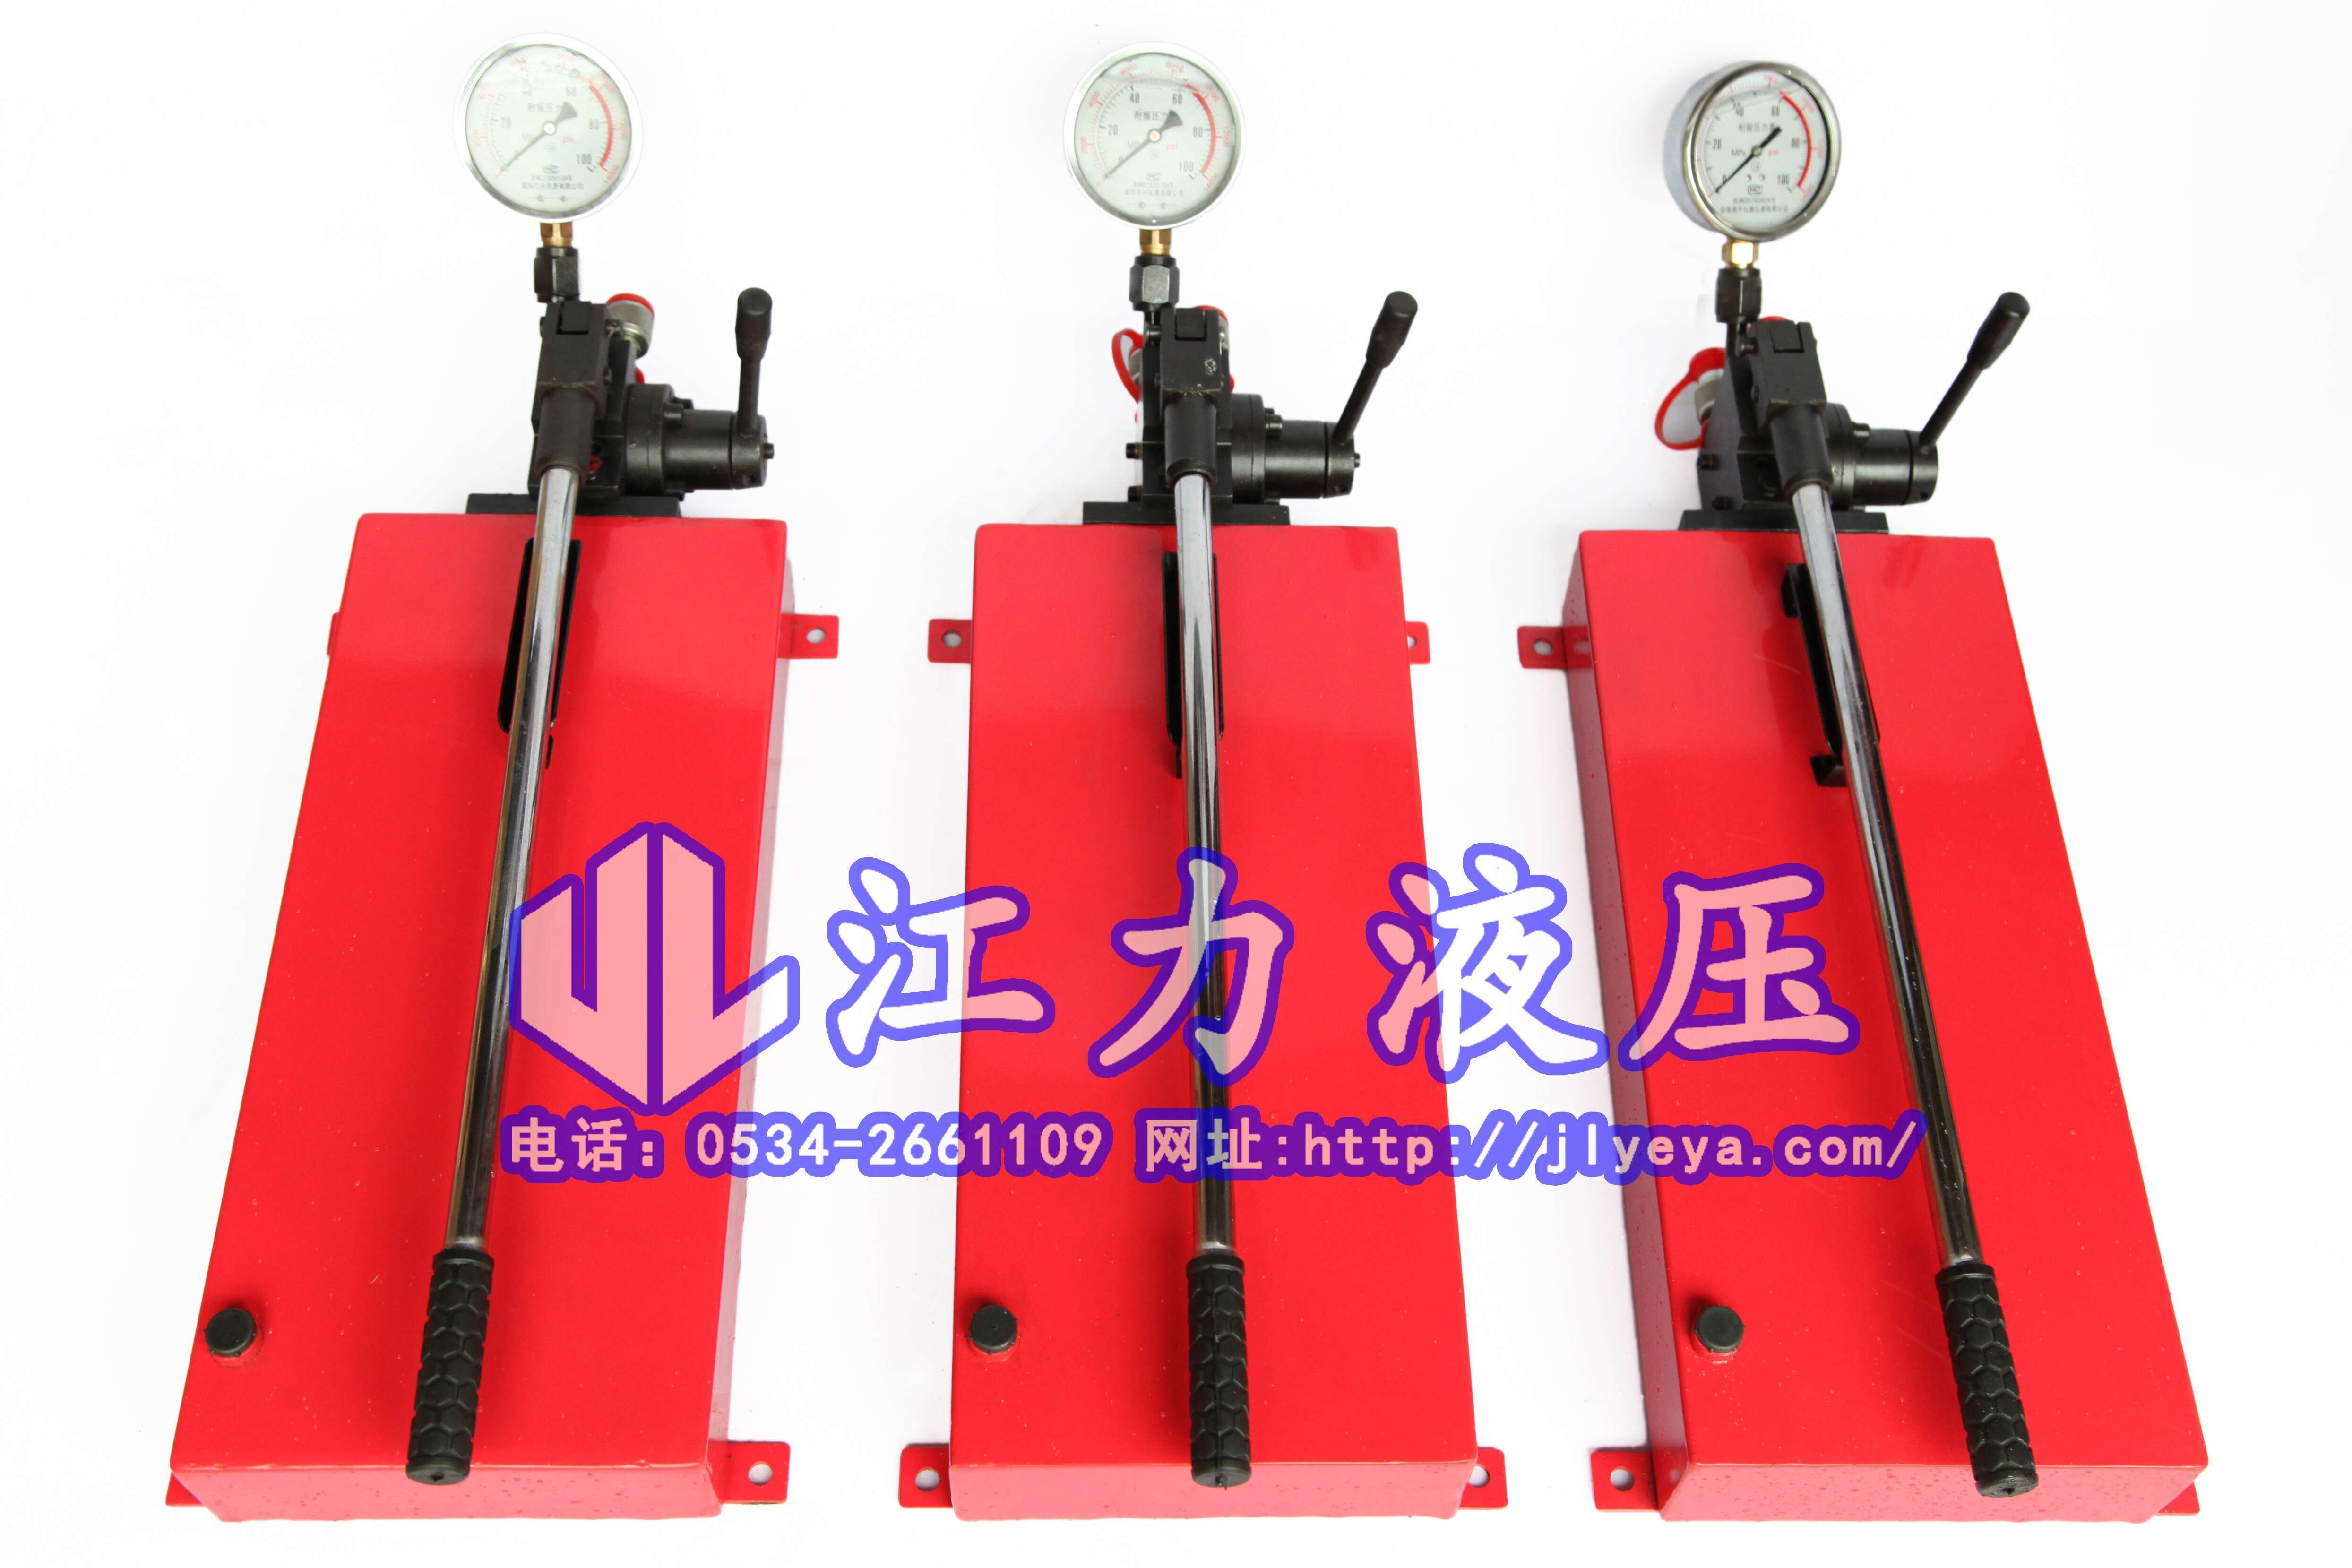 江力液压机具厂供应SYB-3手动泵|向用户提供提供安全、优质、高效的液压机具产品和服务图片